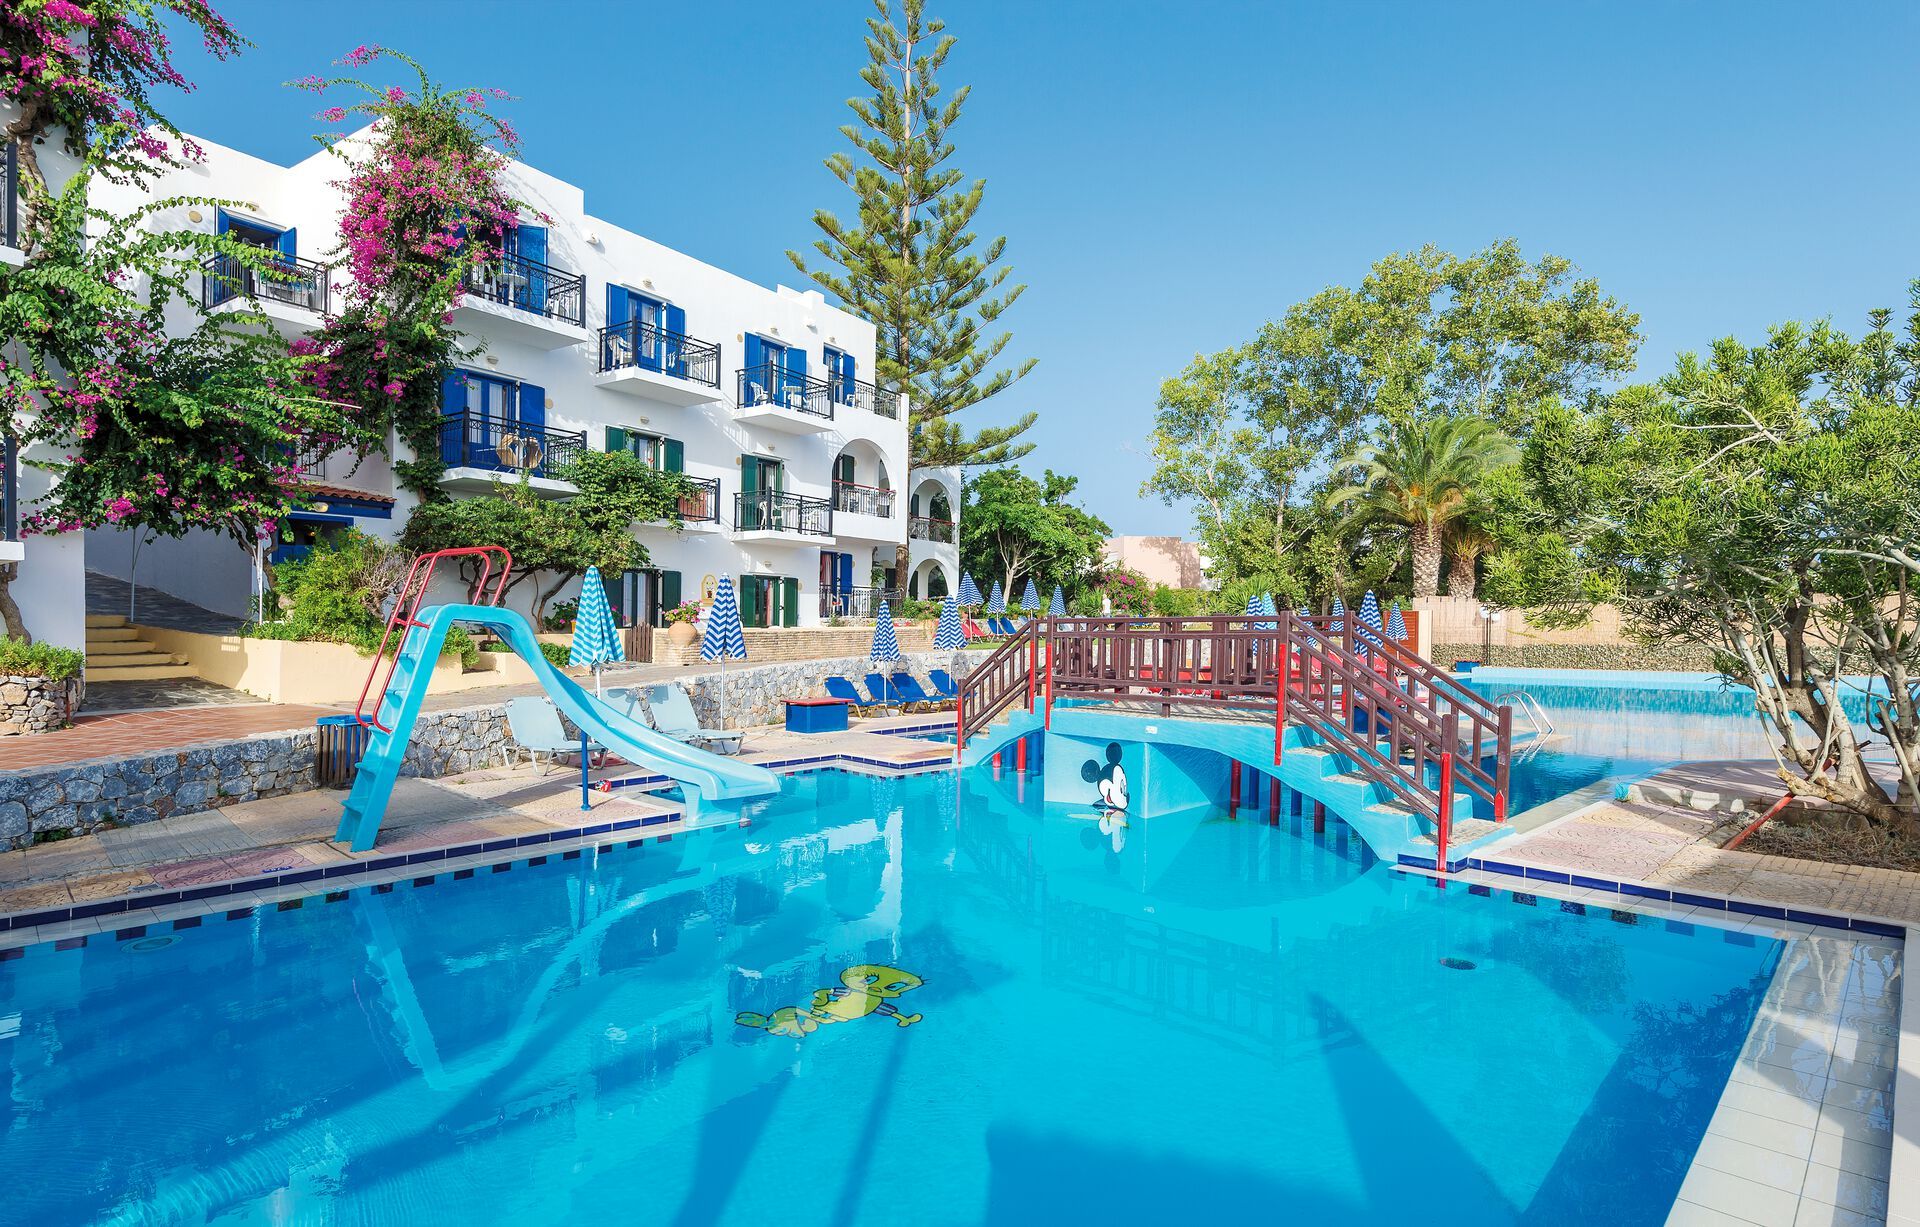 Crète - La Canée - Grèce - Iles grecques - Hôtel Porto Platanias Village Resort 4*